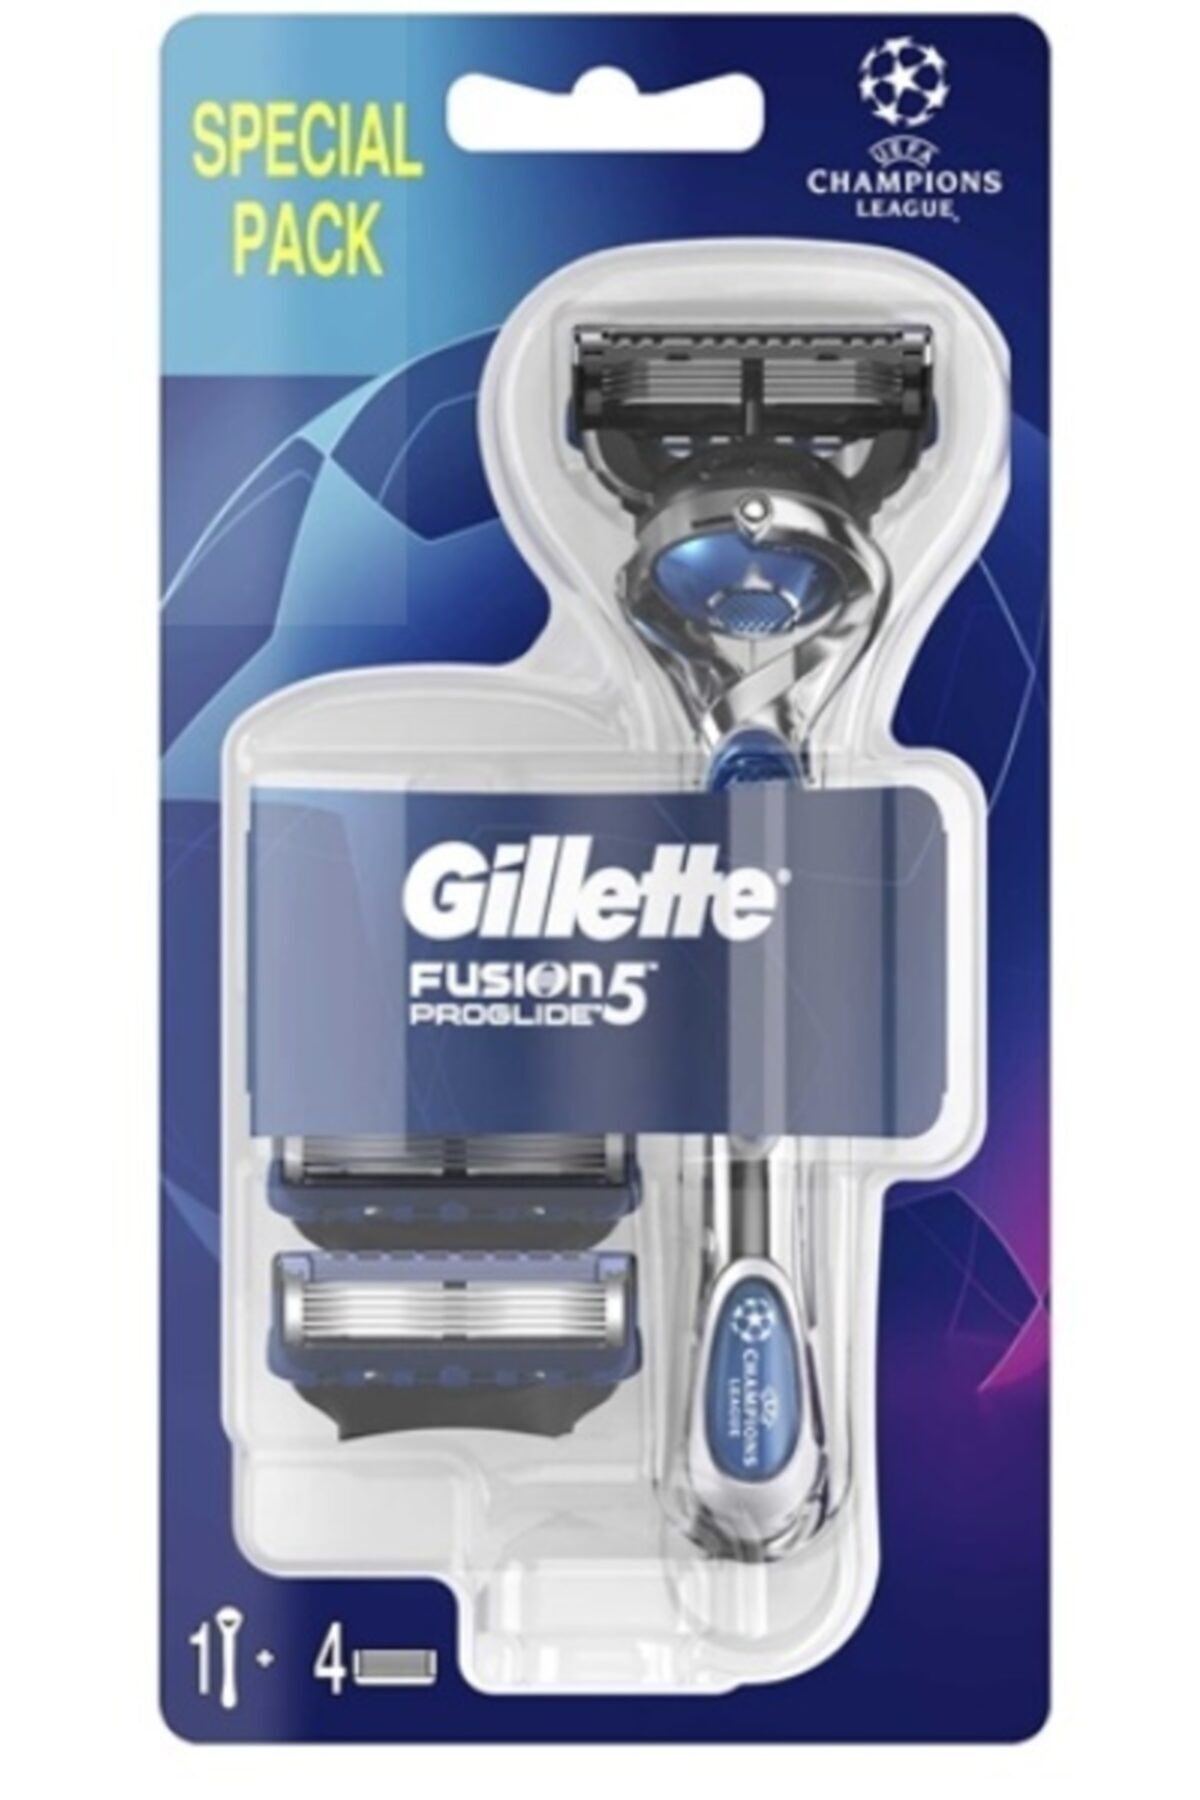 Gillette Fusion 5 Proglide Tıraş Makinesi + 4 Yedek Bıçak Şampiyonlar Ligi Paketi